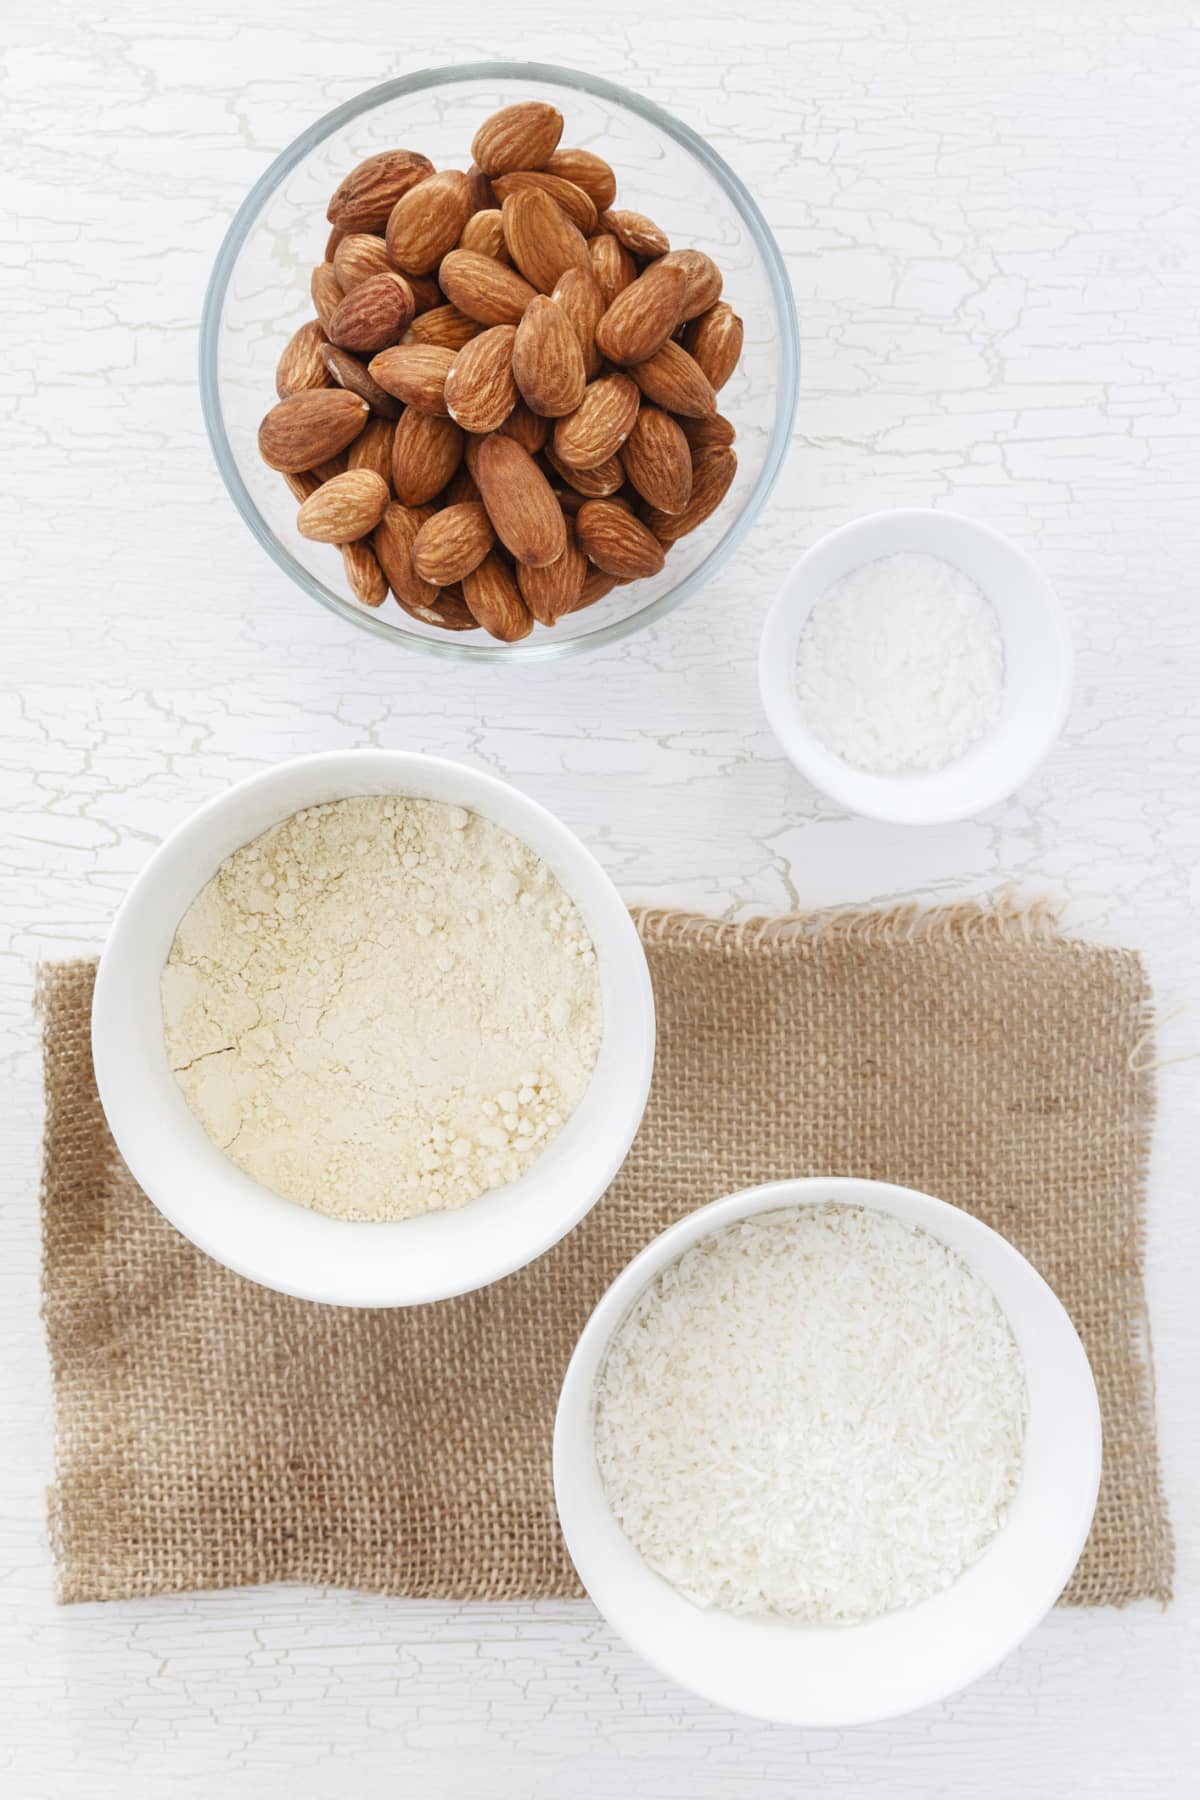 Bowl of almonds next to bowl of almond flour